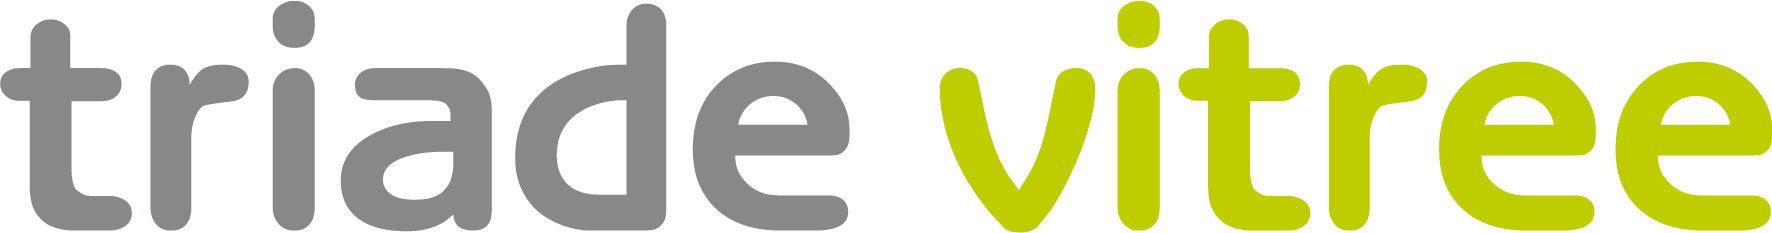 Werken bij Triade Vitree logo